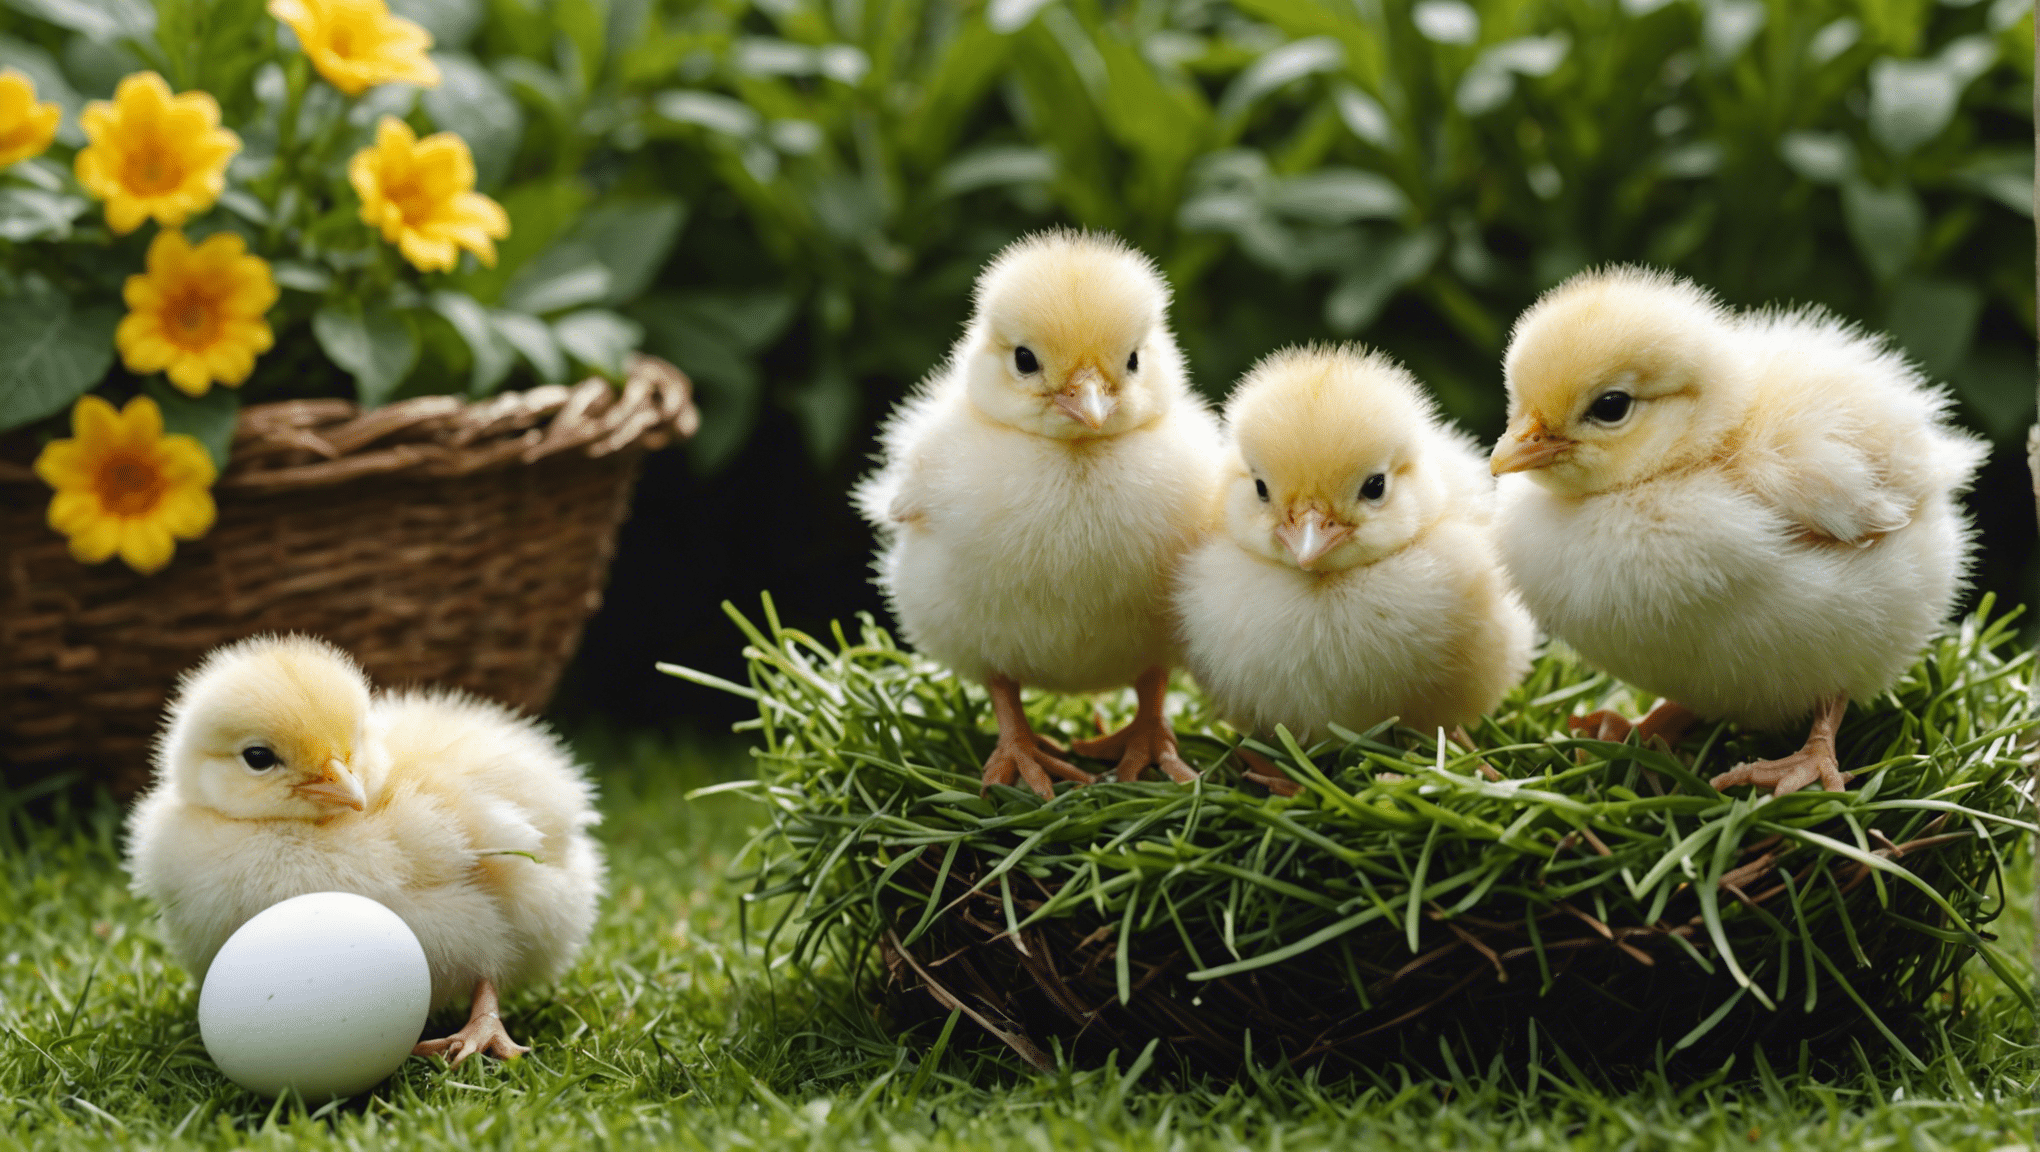 Leer hoe u kuikens uit eieren kunt grootbrengen met onze uitgebreide gids over het uitbroeden en verzorgen van kuikentjes.